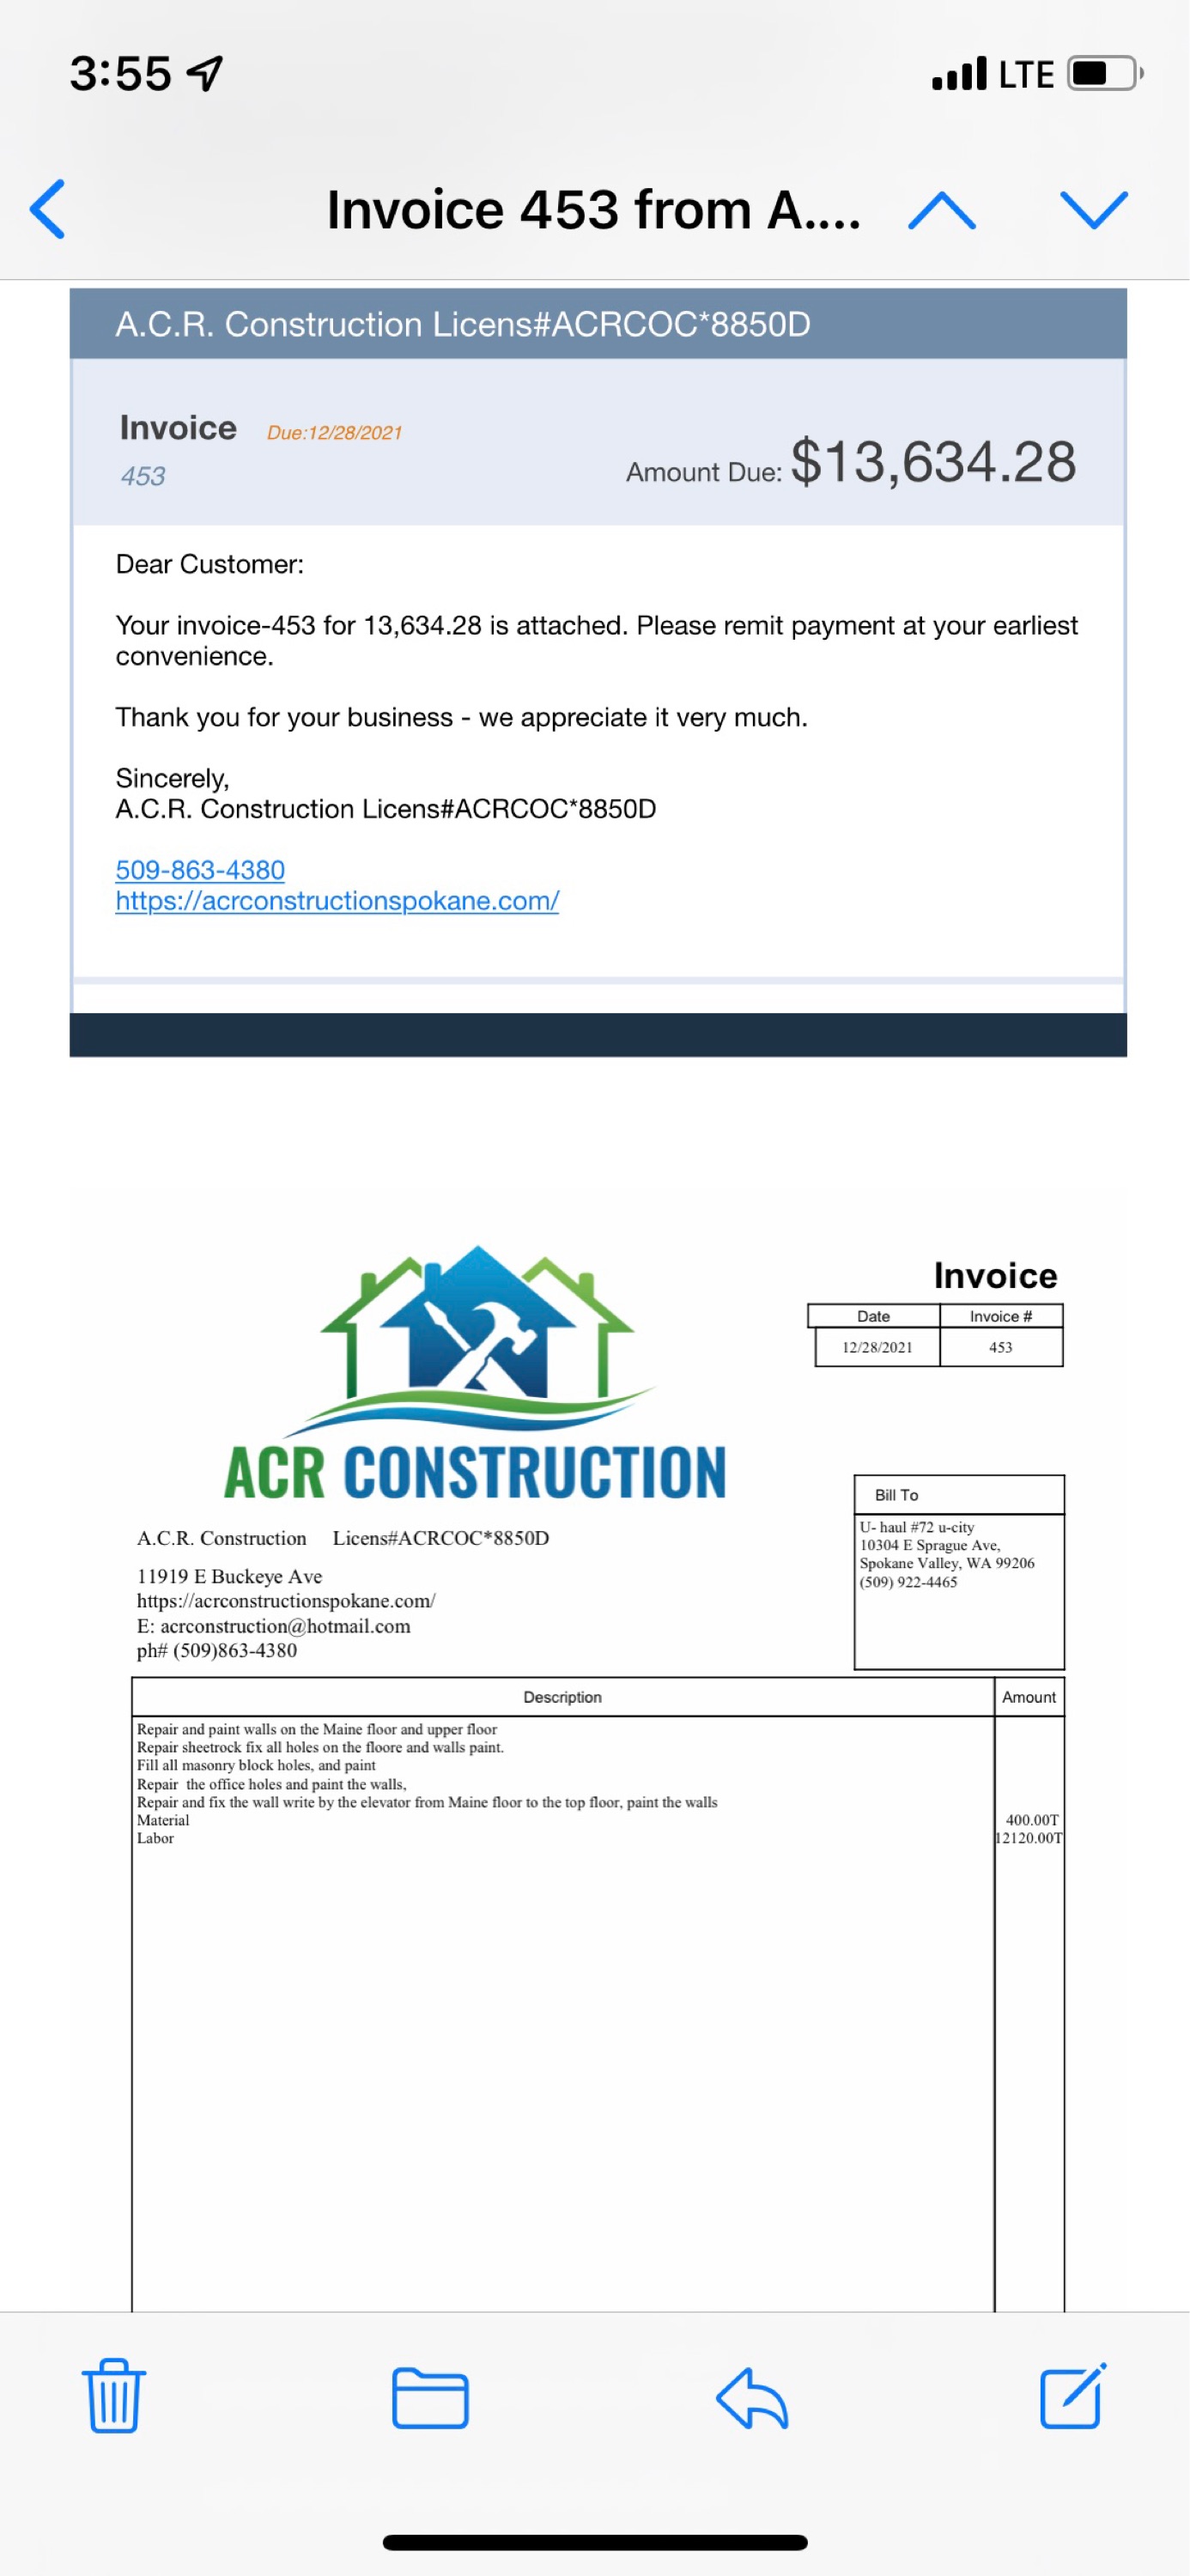 ACR Construction Logo